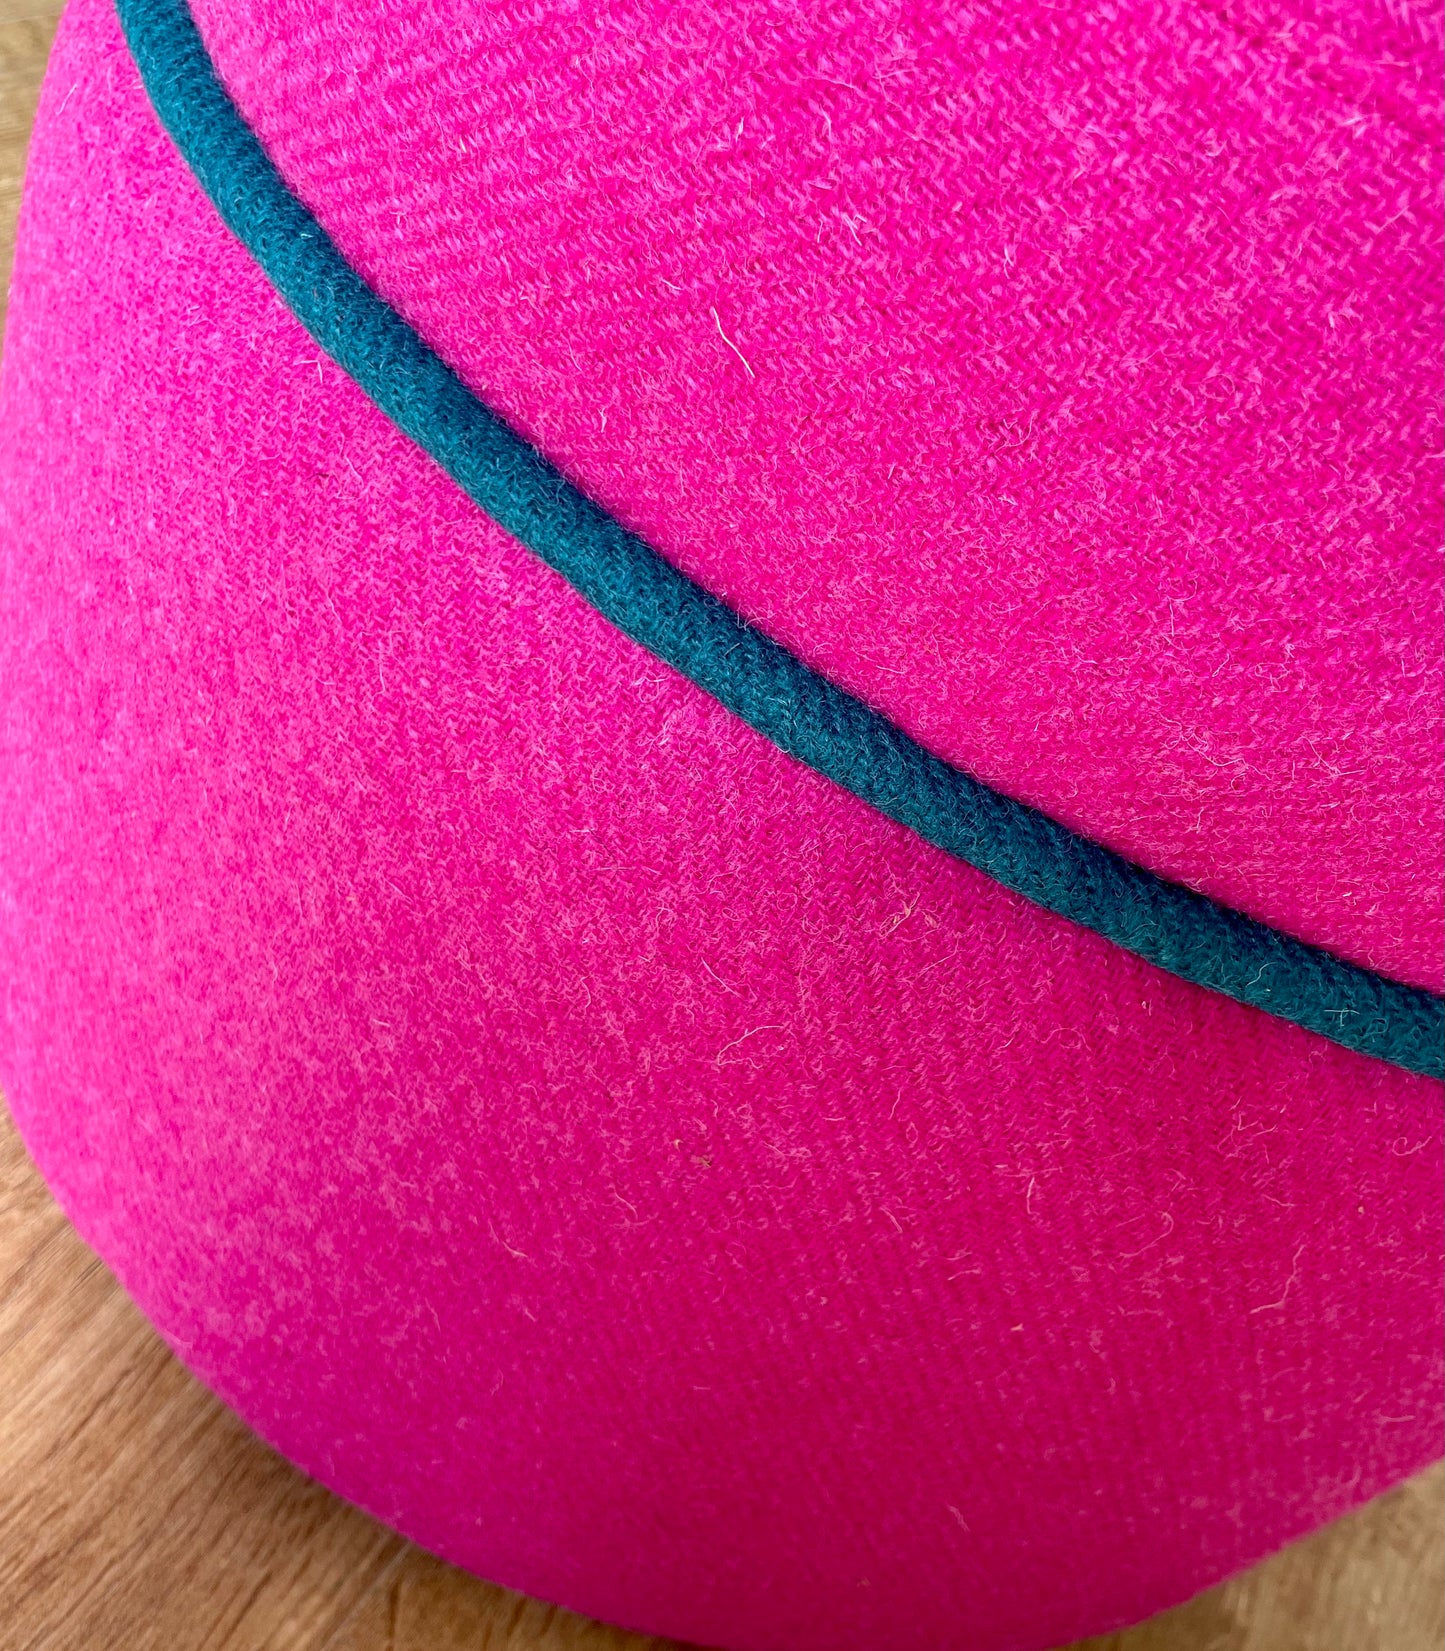 Bright Pink Harris Tweed Floating Footstool with Teal Trim Detail